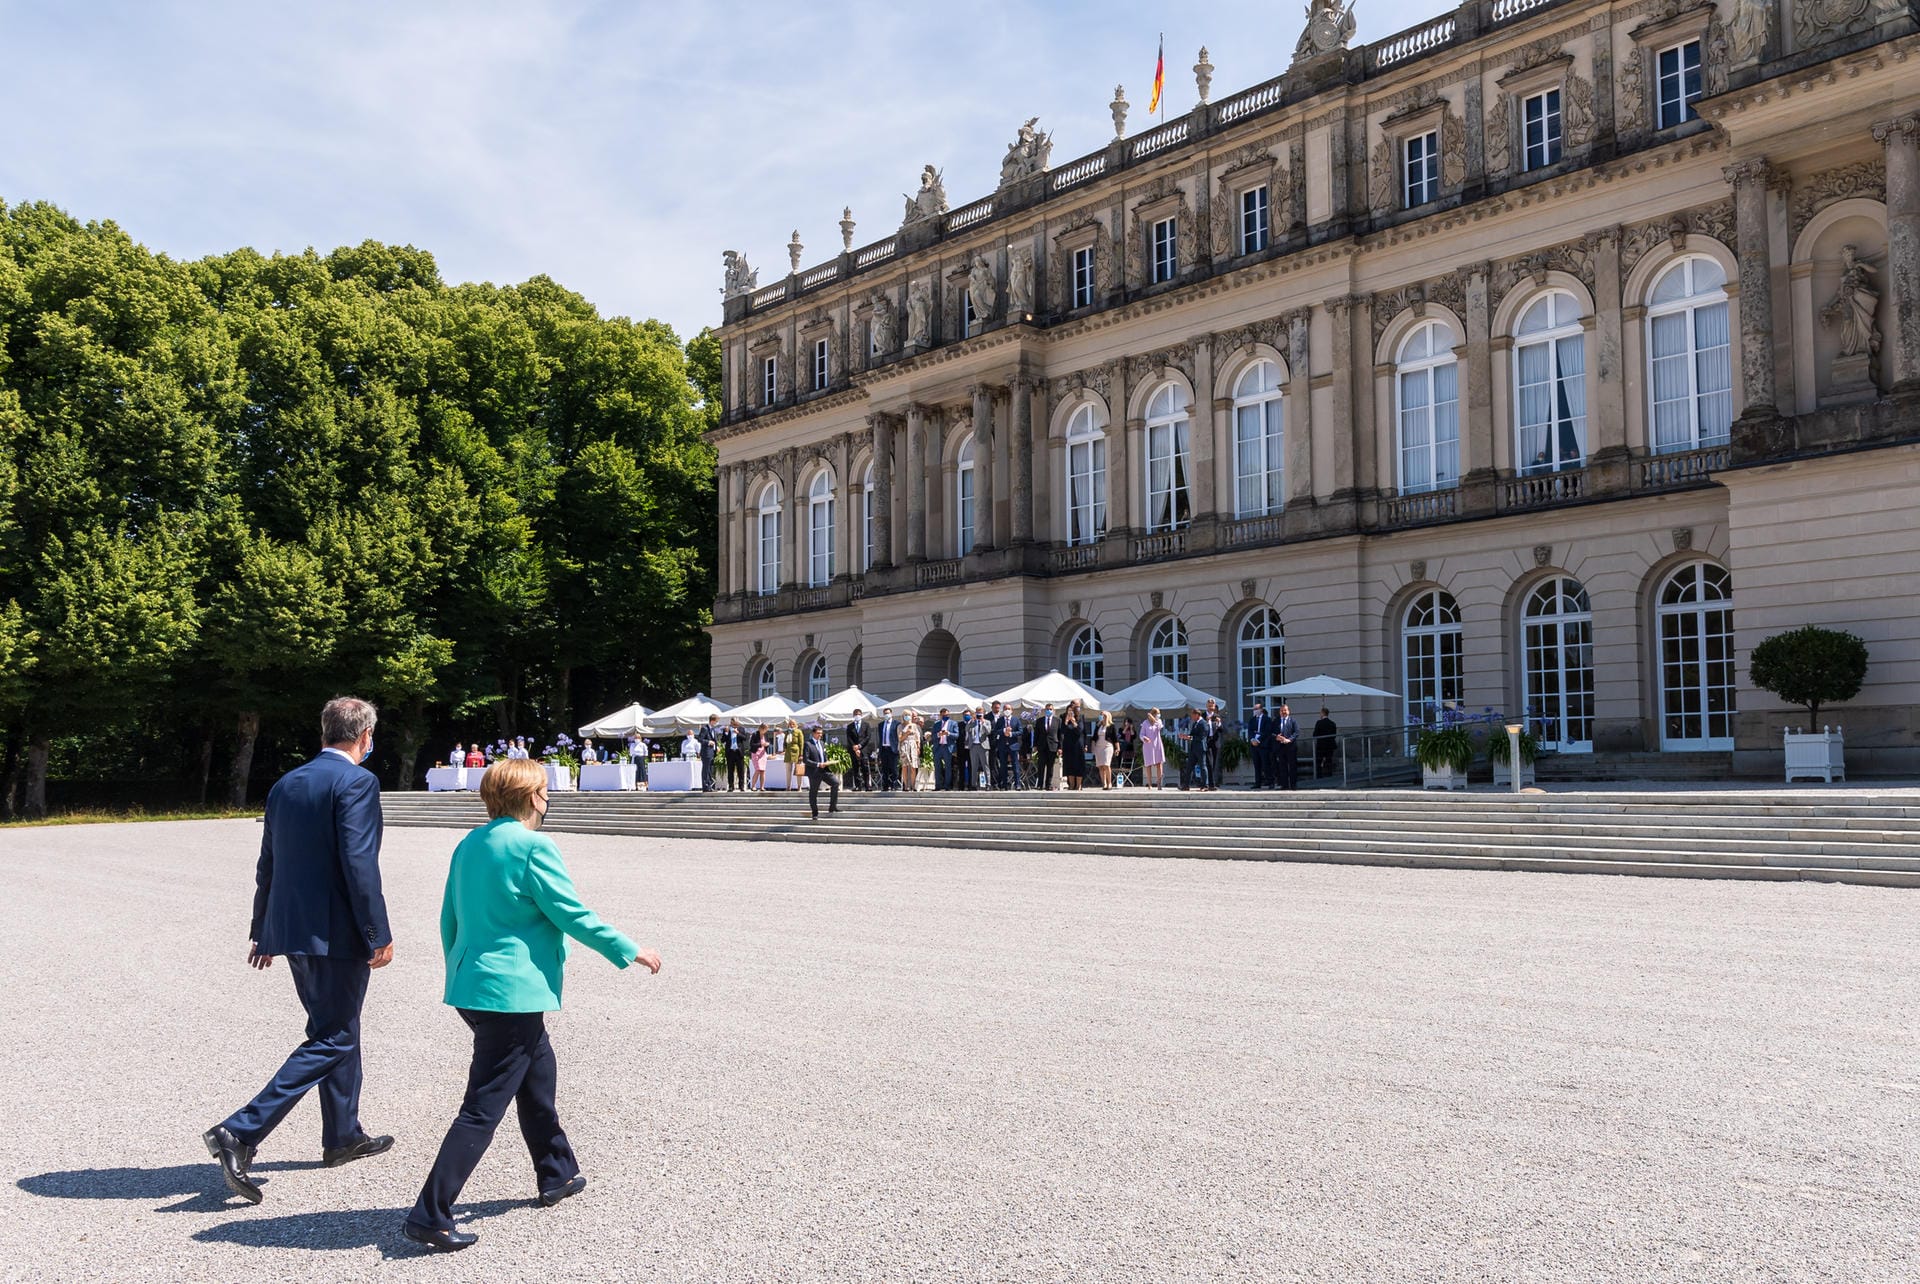 Königliche Kulisse: Söder begleitet Merkel ins Neue Schloss (CDU) auf Herrenchiemsee, wo im Anschluss die Kabinettssitzung stattfindet. Das Schloss ließ Märchenkönig Ludwig II. im 19. Jahrhundert errichten.